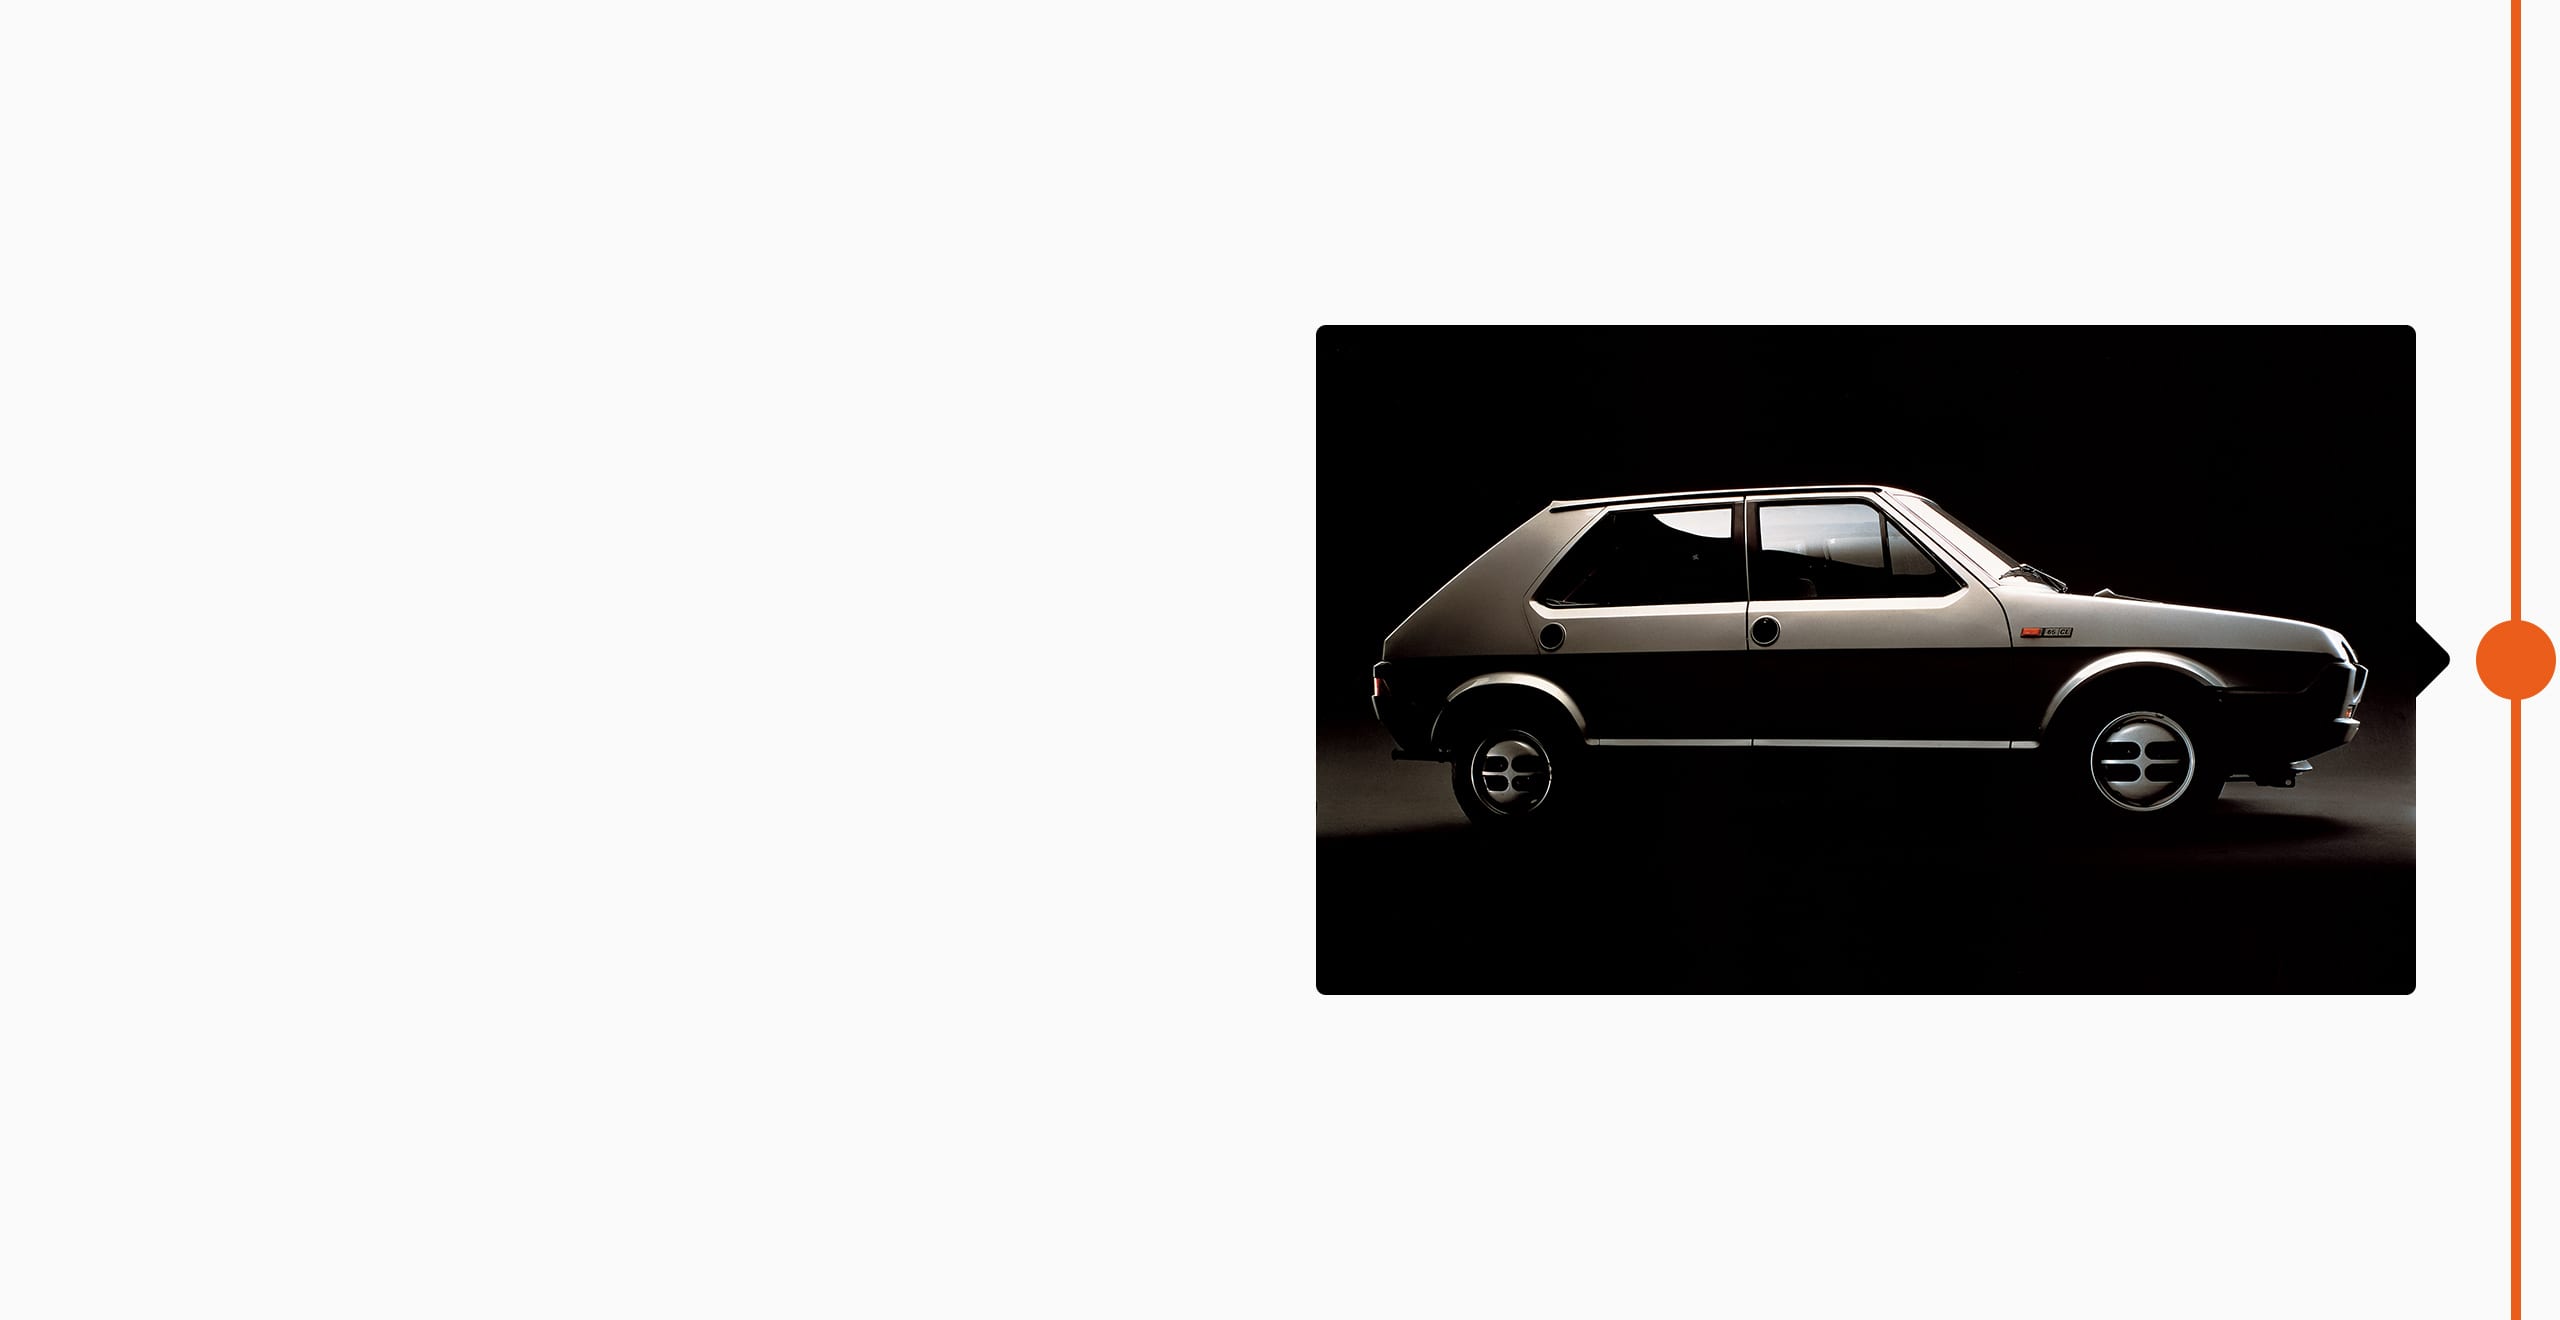  SEAT varumärke historia 1979 - SEAT Ritmo ny bildesign